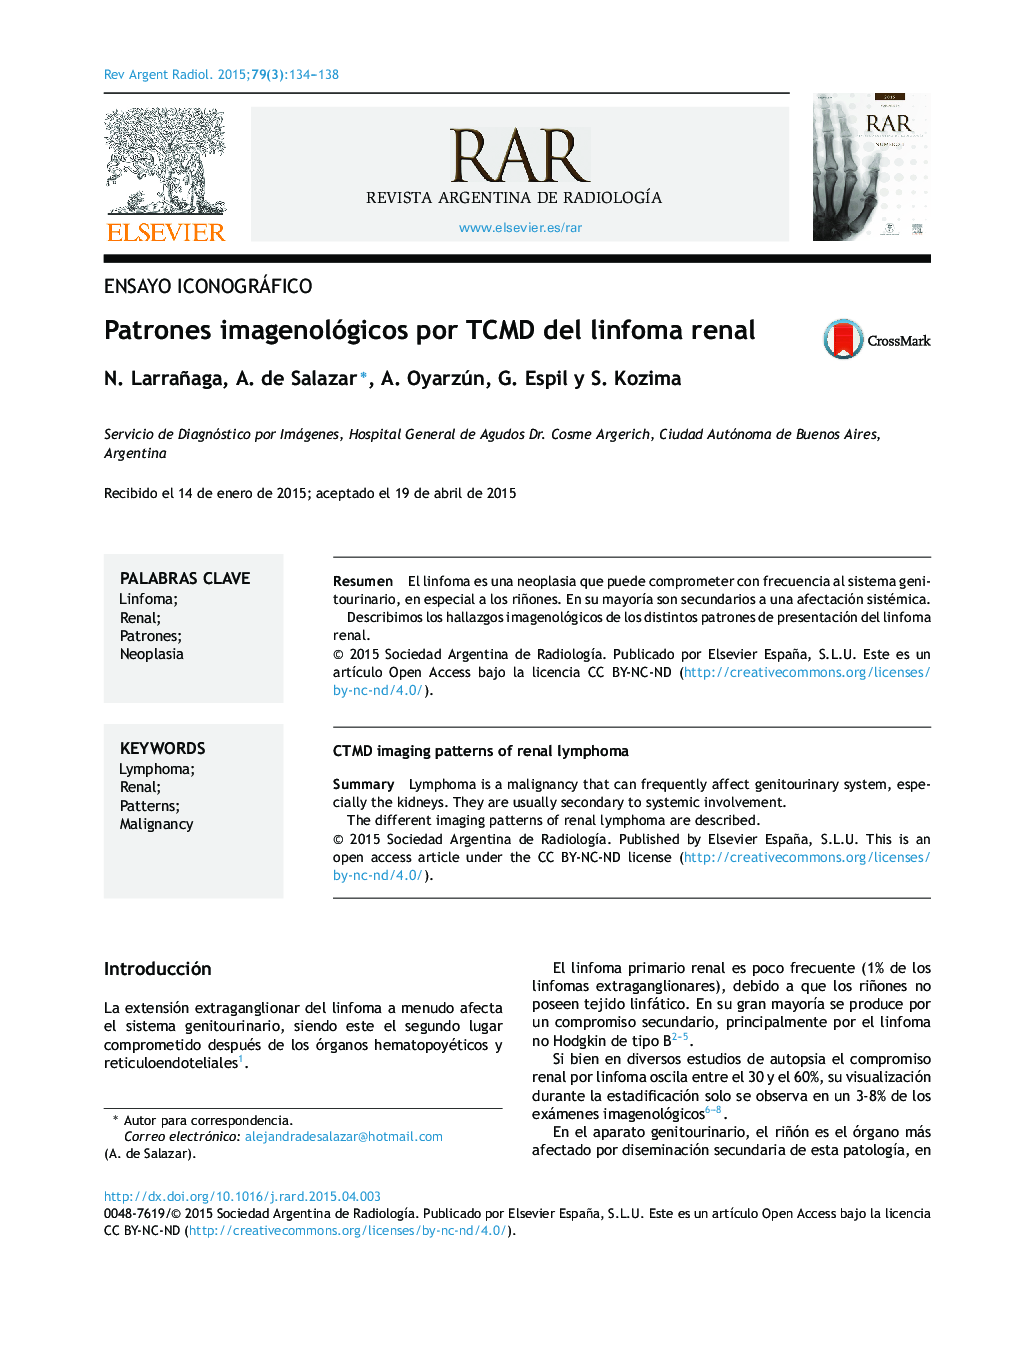 Patrones imagenológicos por TCMD del linfoma renal